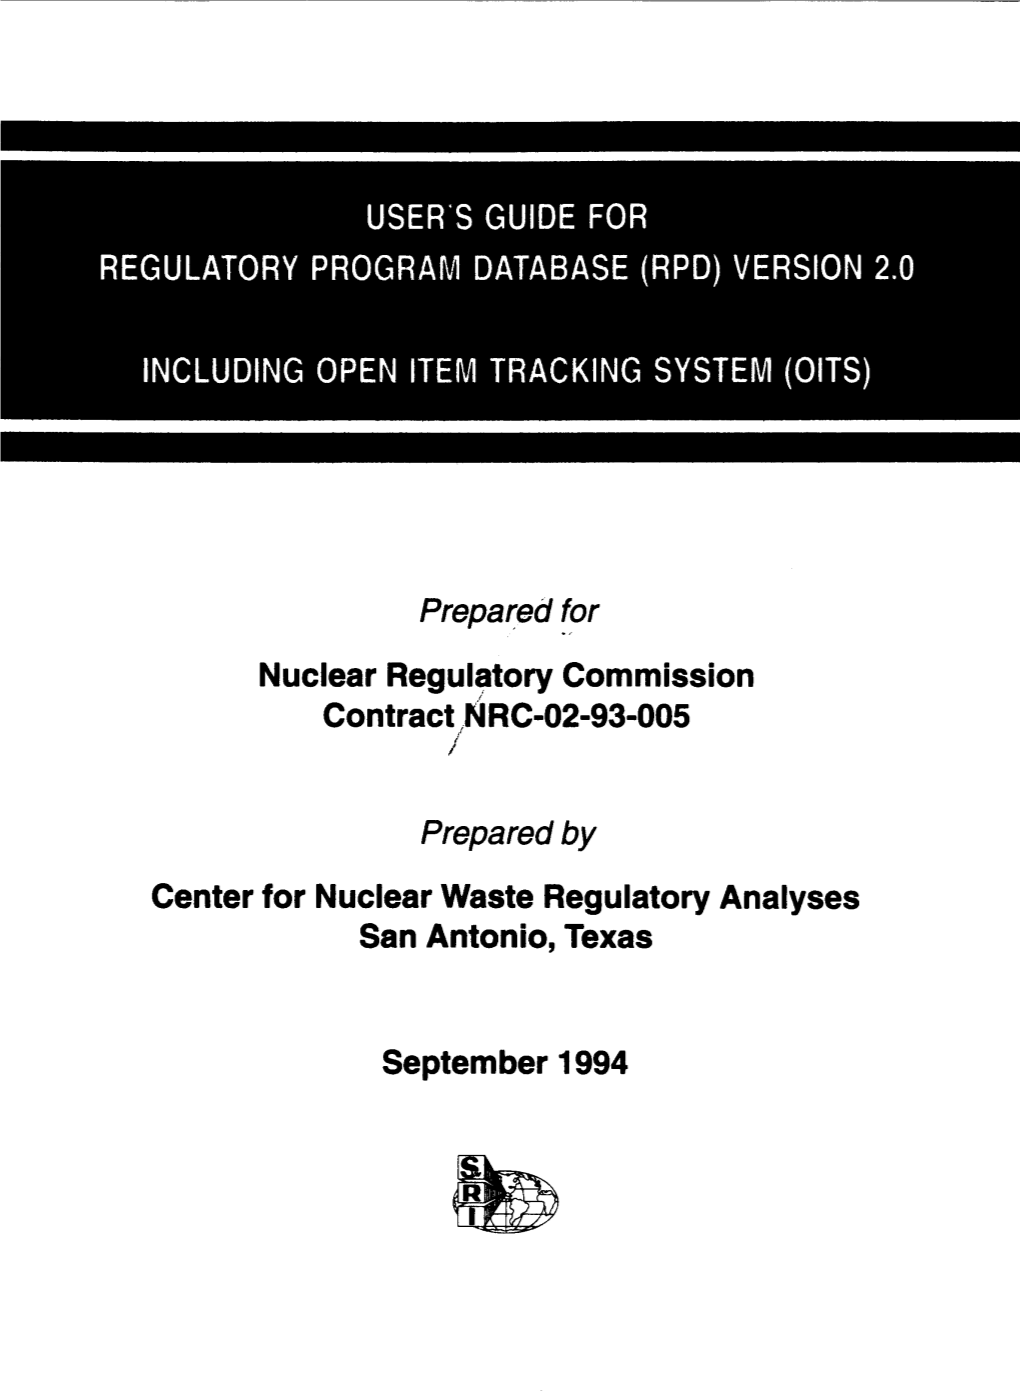 "User's Guide for Regulatory Program Database (RPD) Version 2.0